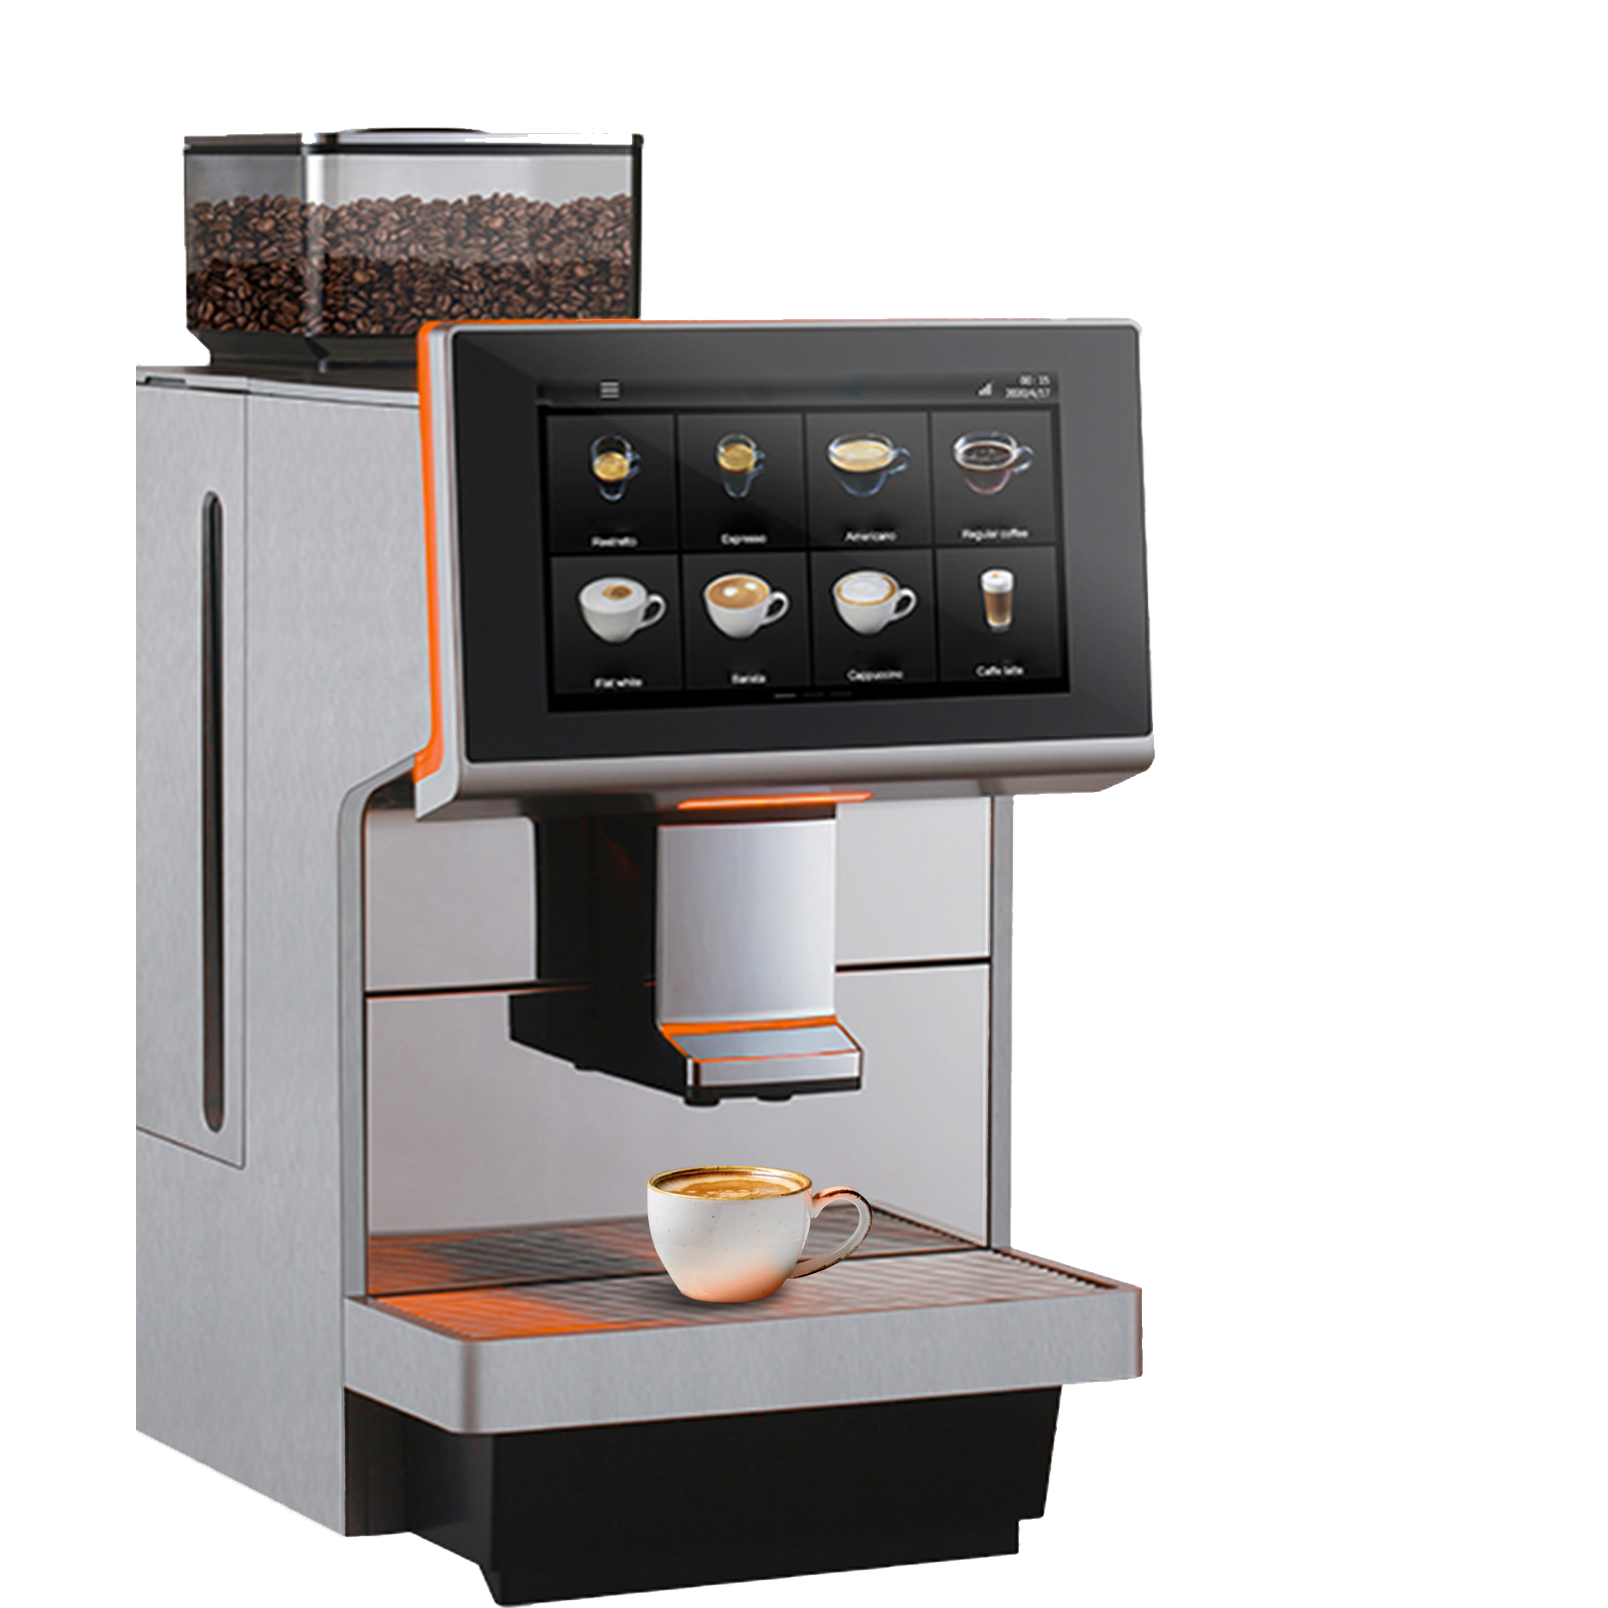 Quel café choisir pour une machine automatique?